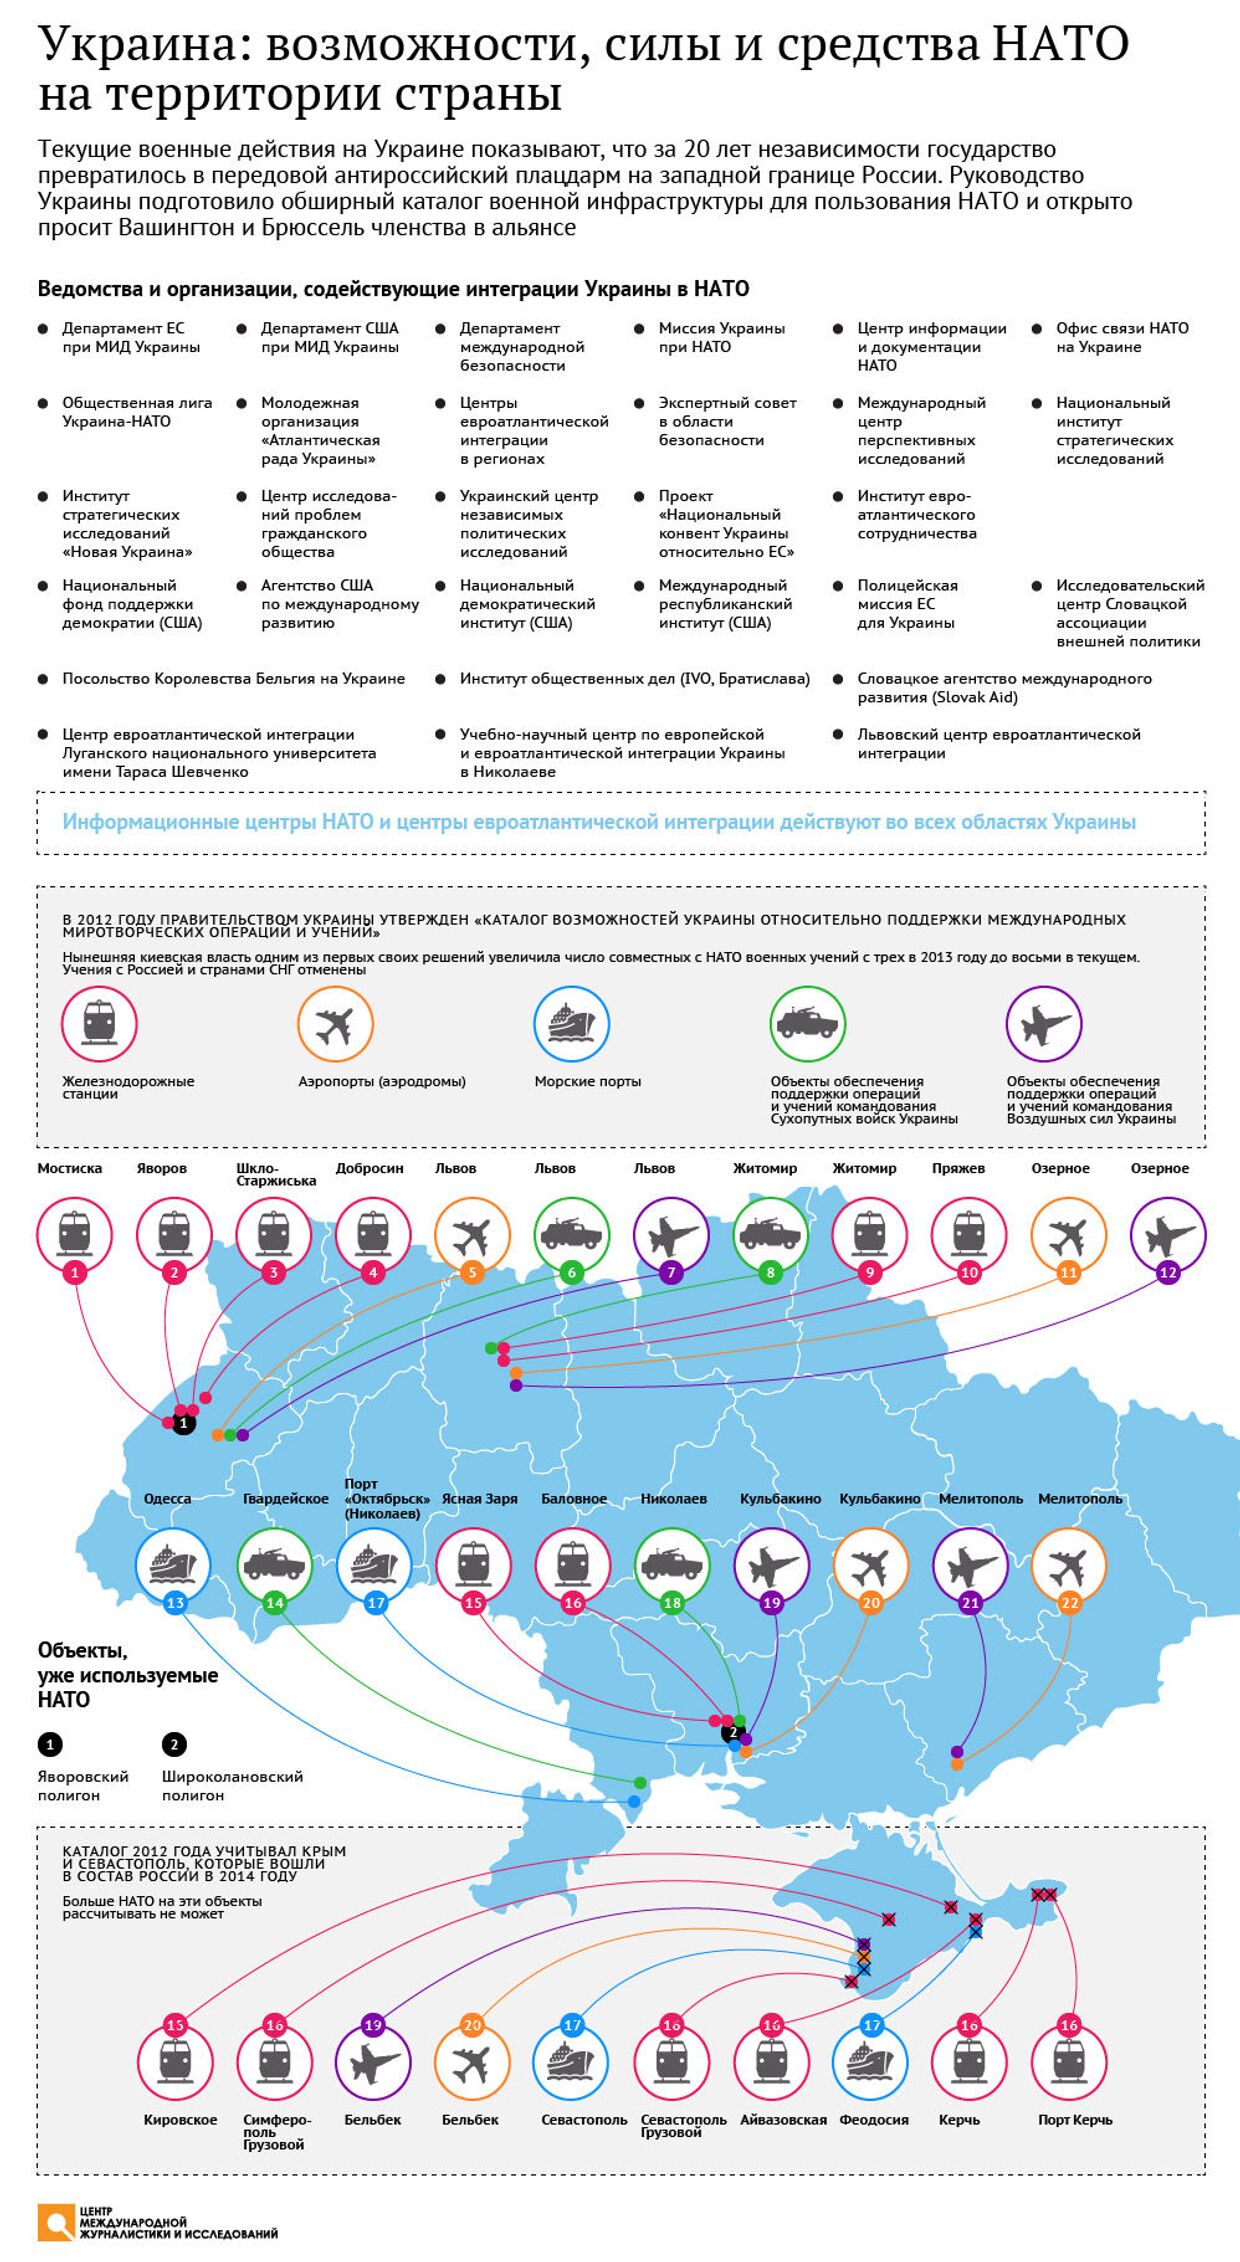 Украина: возможности, силы и средства НАТО на территории страны